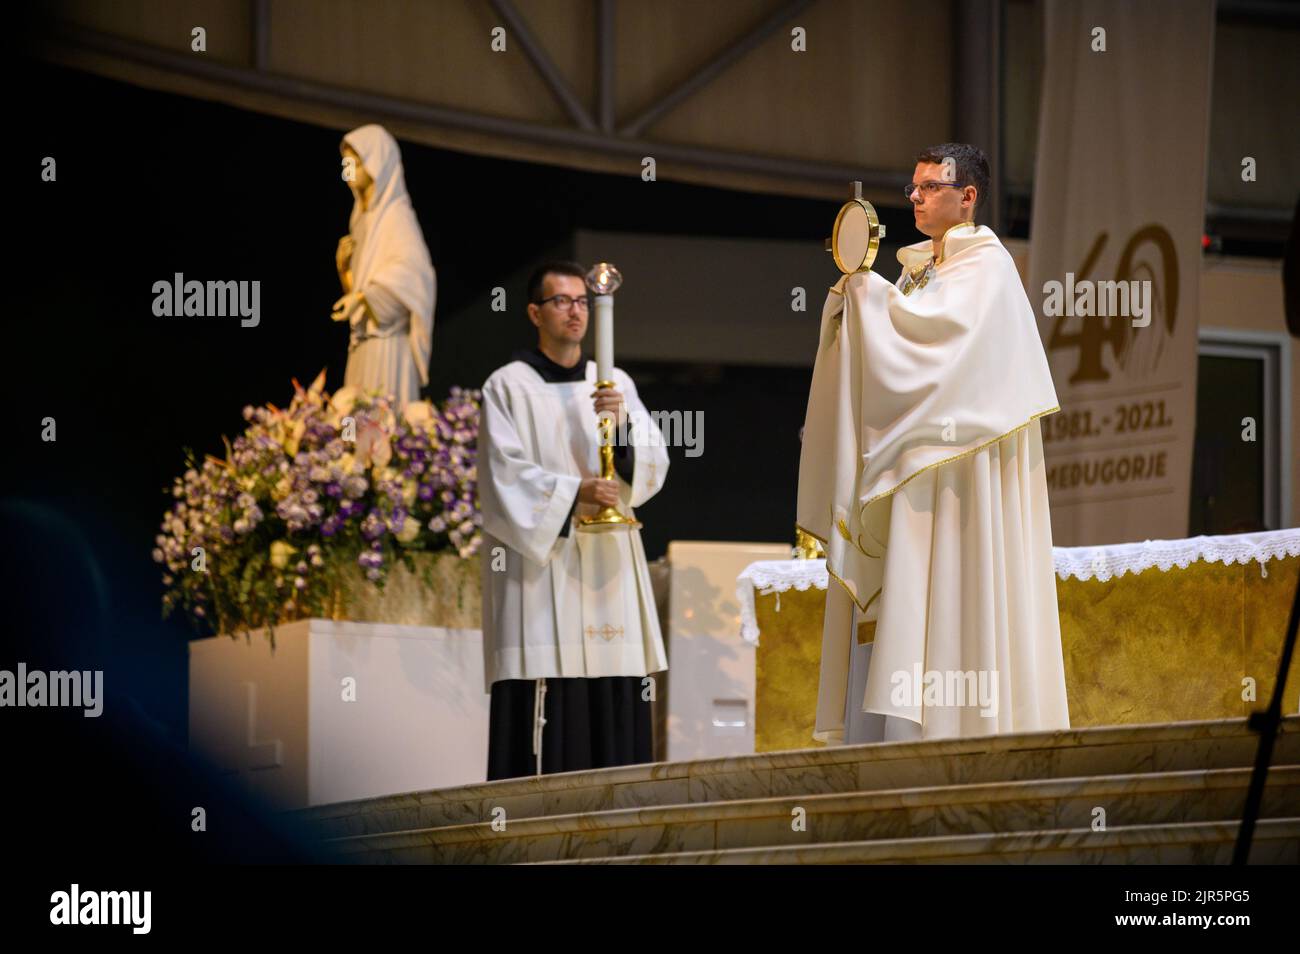 Un sacerdote benedice i fedeli con il Santissimo Sacramento al termine di un adorazione eucaristica a Medjugorje, Bosnia-Erzegovina. Foto Stock